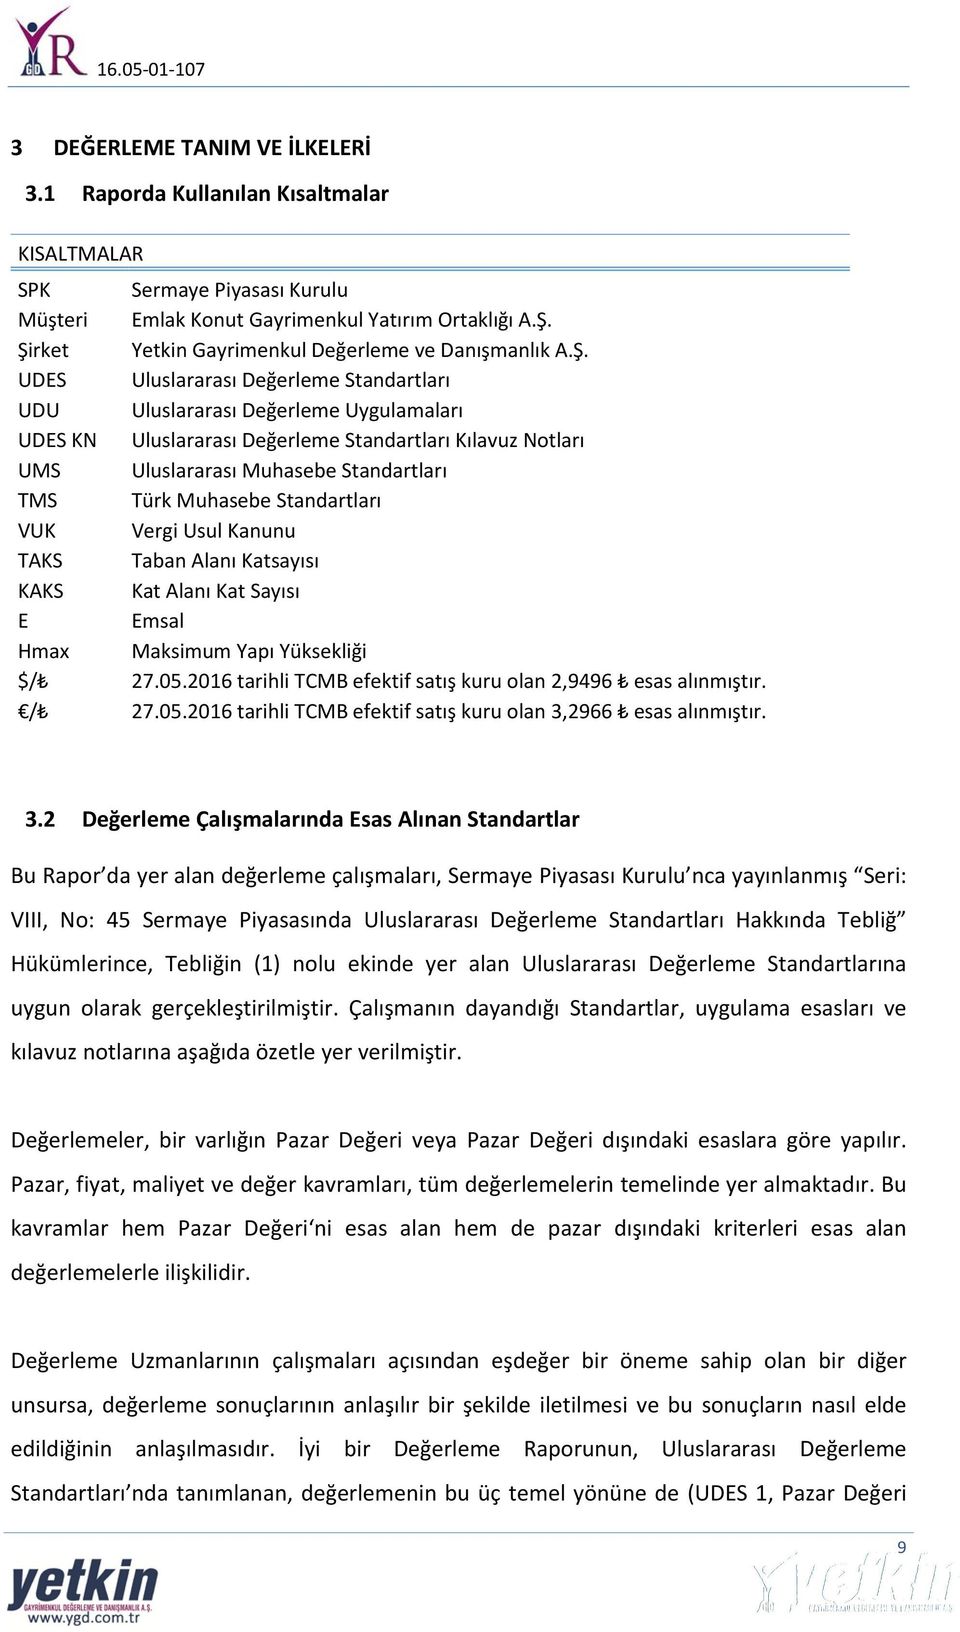 UMS Uluslararası Muhasebe Standartları TMS Türk Muhasebe Standartları VUK Vergi Usul Kanunu TAKS Taban Alanı Katsayısı KAKS Kat Alanı Kat Sayısı E Emsal Hmax Maksimum Yapı Yüksekliği $/ 27.05.